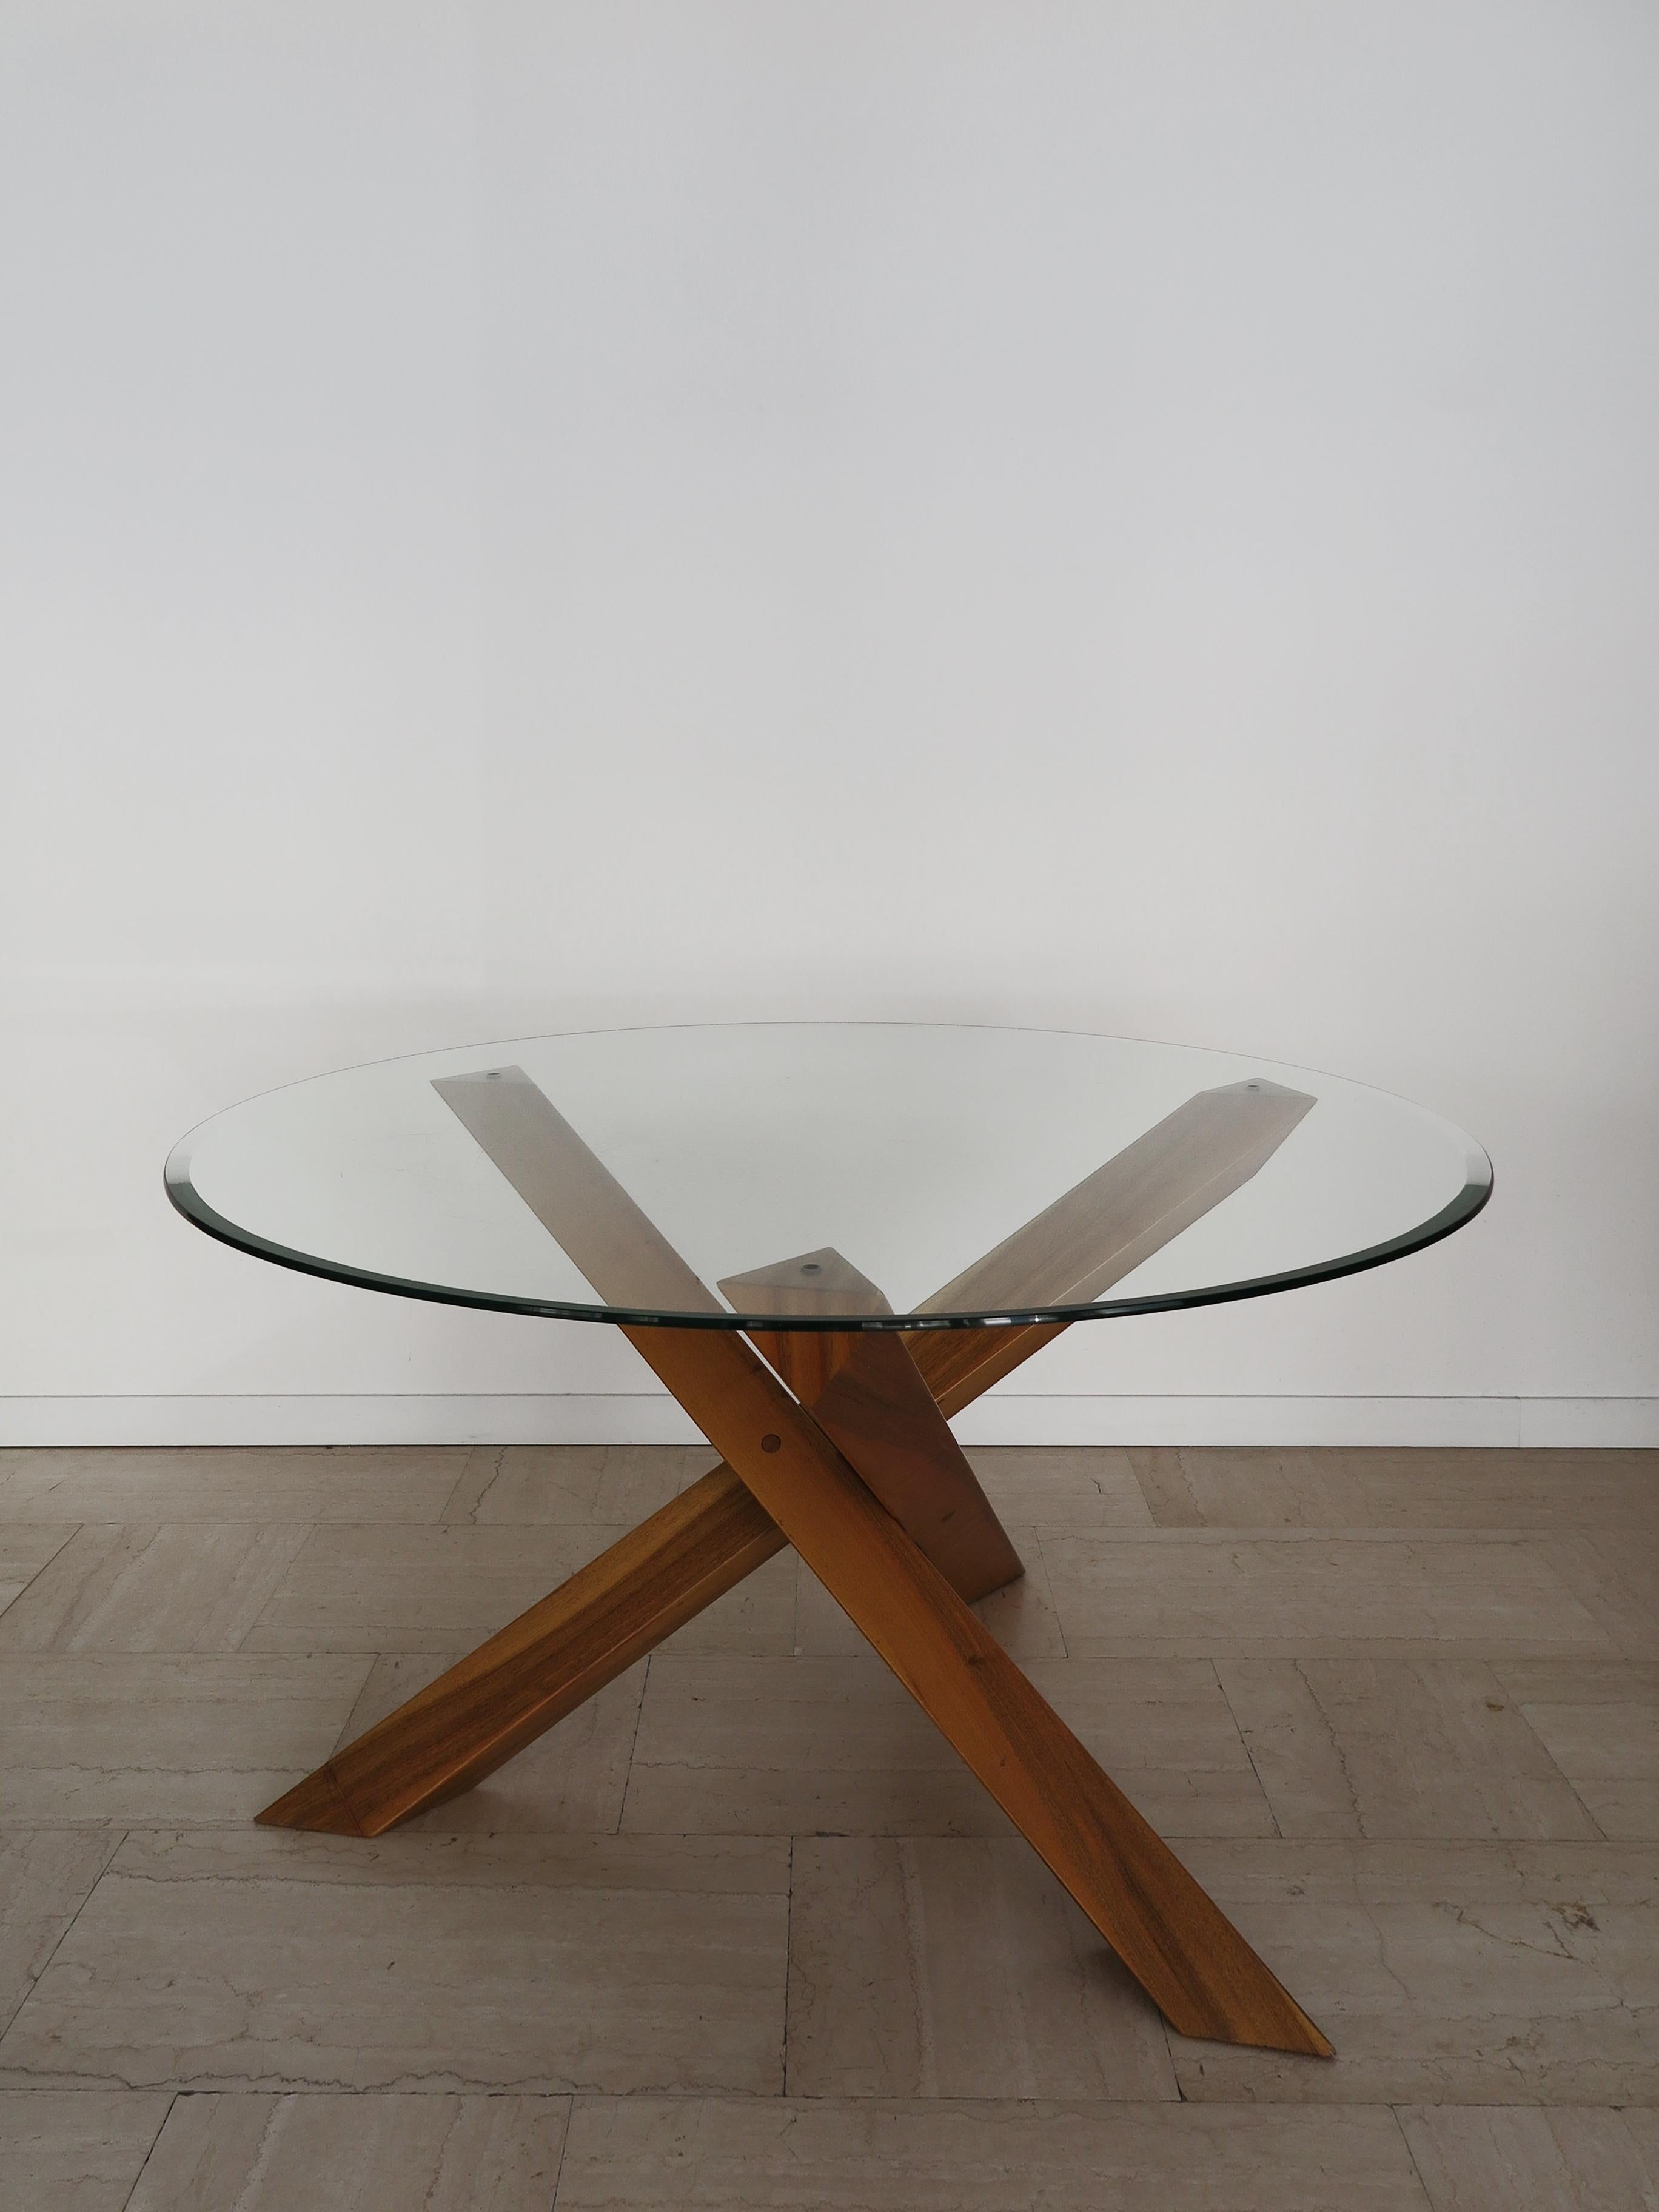 Table de salle à manger italienne dans le style de Mario Bellini pour Cassina avec plateau en verre à bord biseauté reposant sur un pied sculptural en bois, fabriquée en Italie dans les années 1980.

Veuillez noter que la table est d'origine de